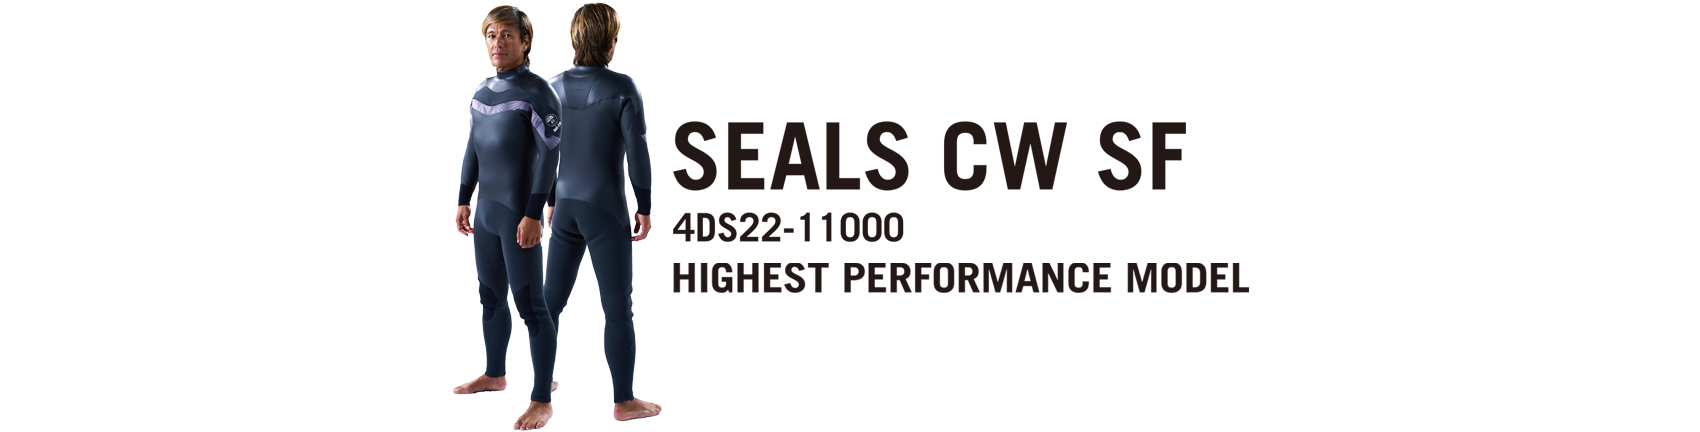 SEALS-CW-SF